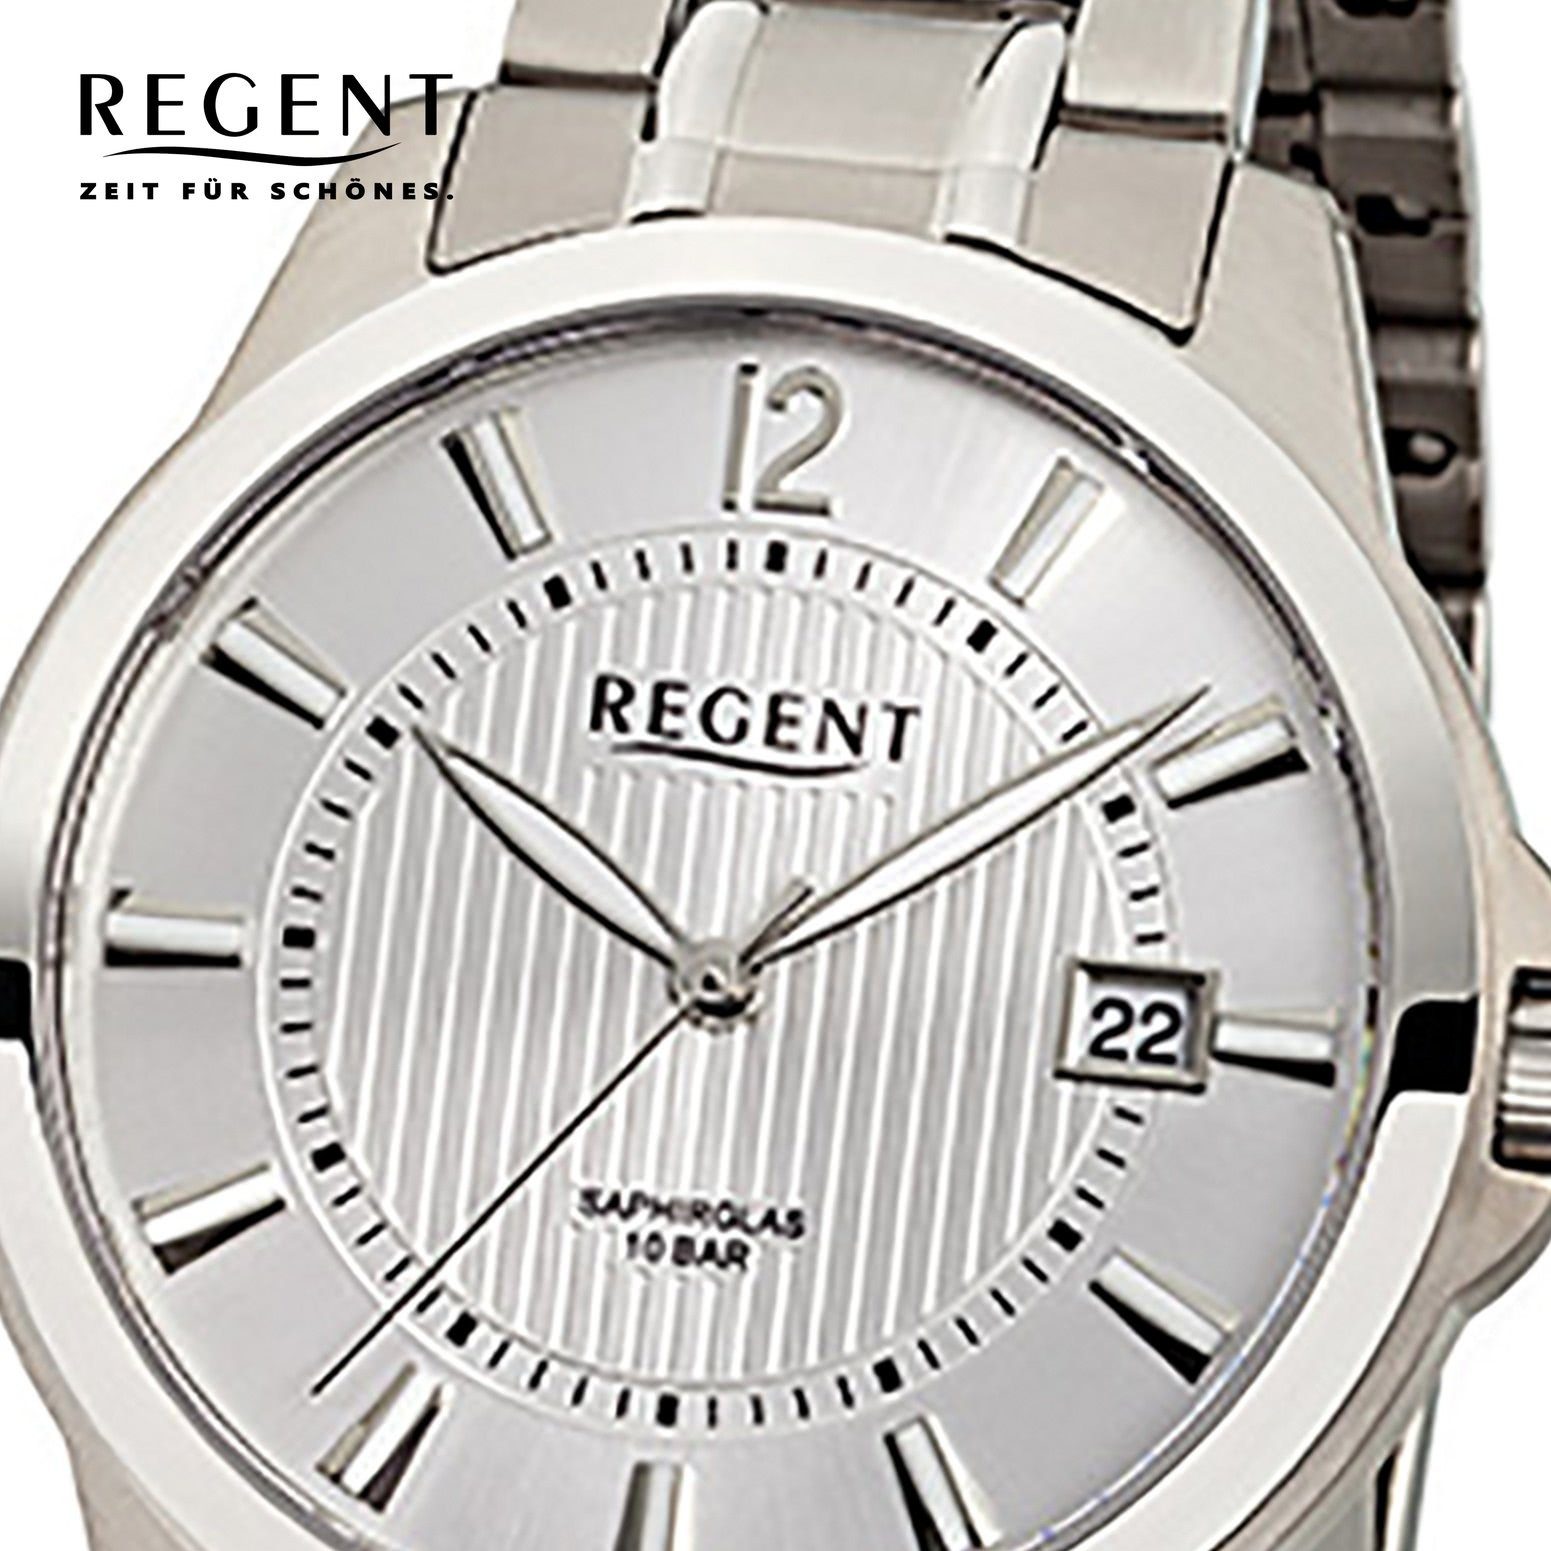 Analog, (ca. Herren mittel 39mm), Regent Titanarmband Herren-Armbanduhr Quarzuhr Regent Armbanduhr silber rund,